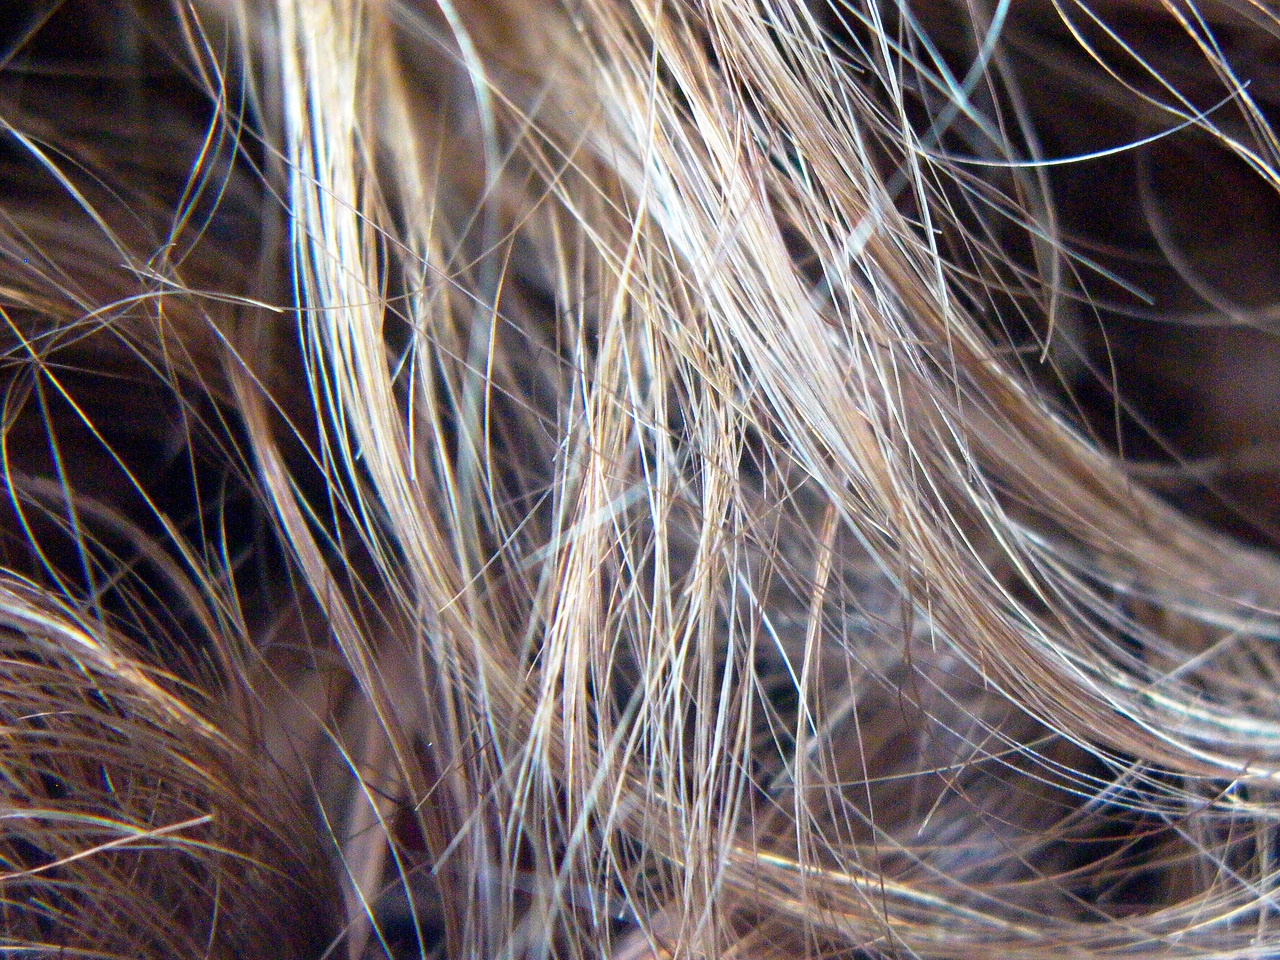   Как найти хорошего мастера для мелирования волос на дому в центре Анталии  